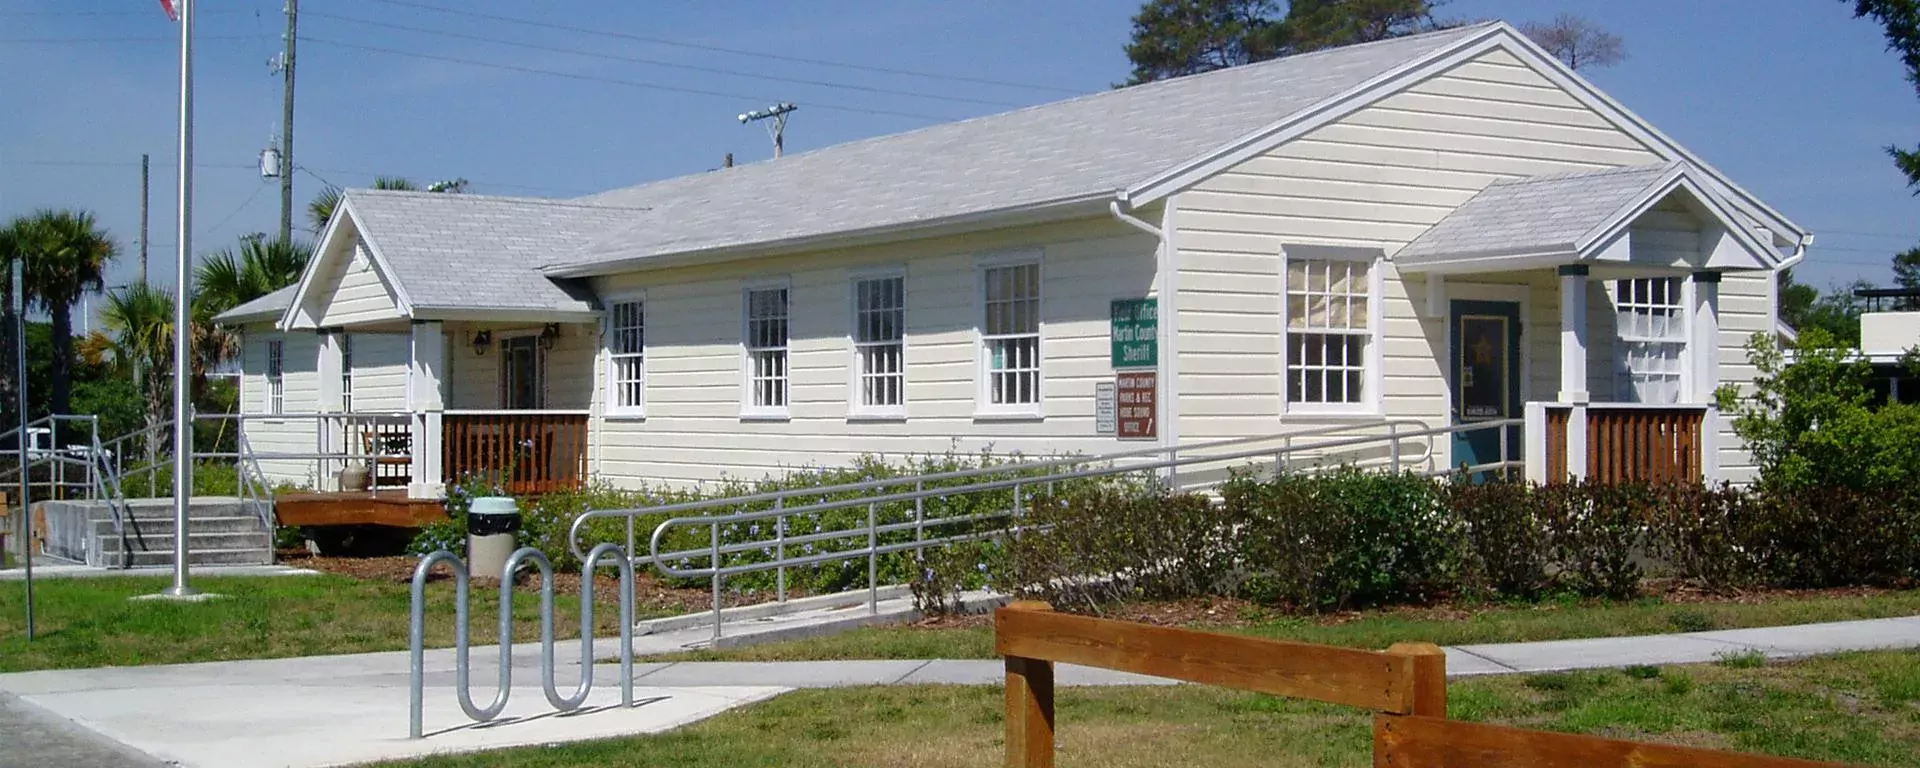 Hobe Sound Community Center